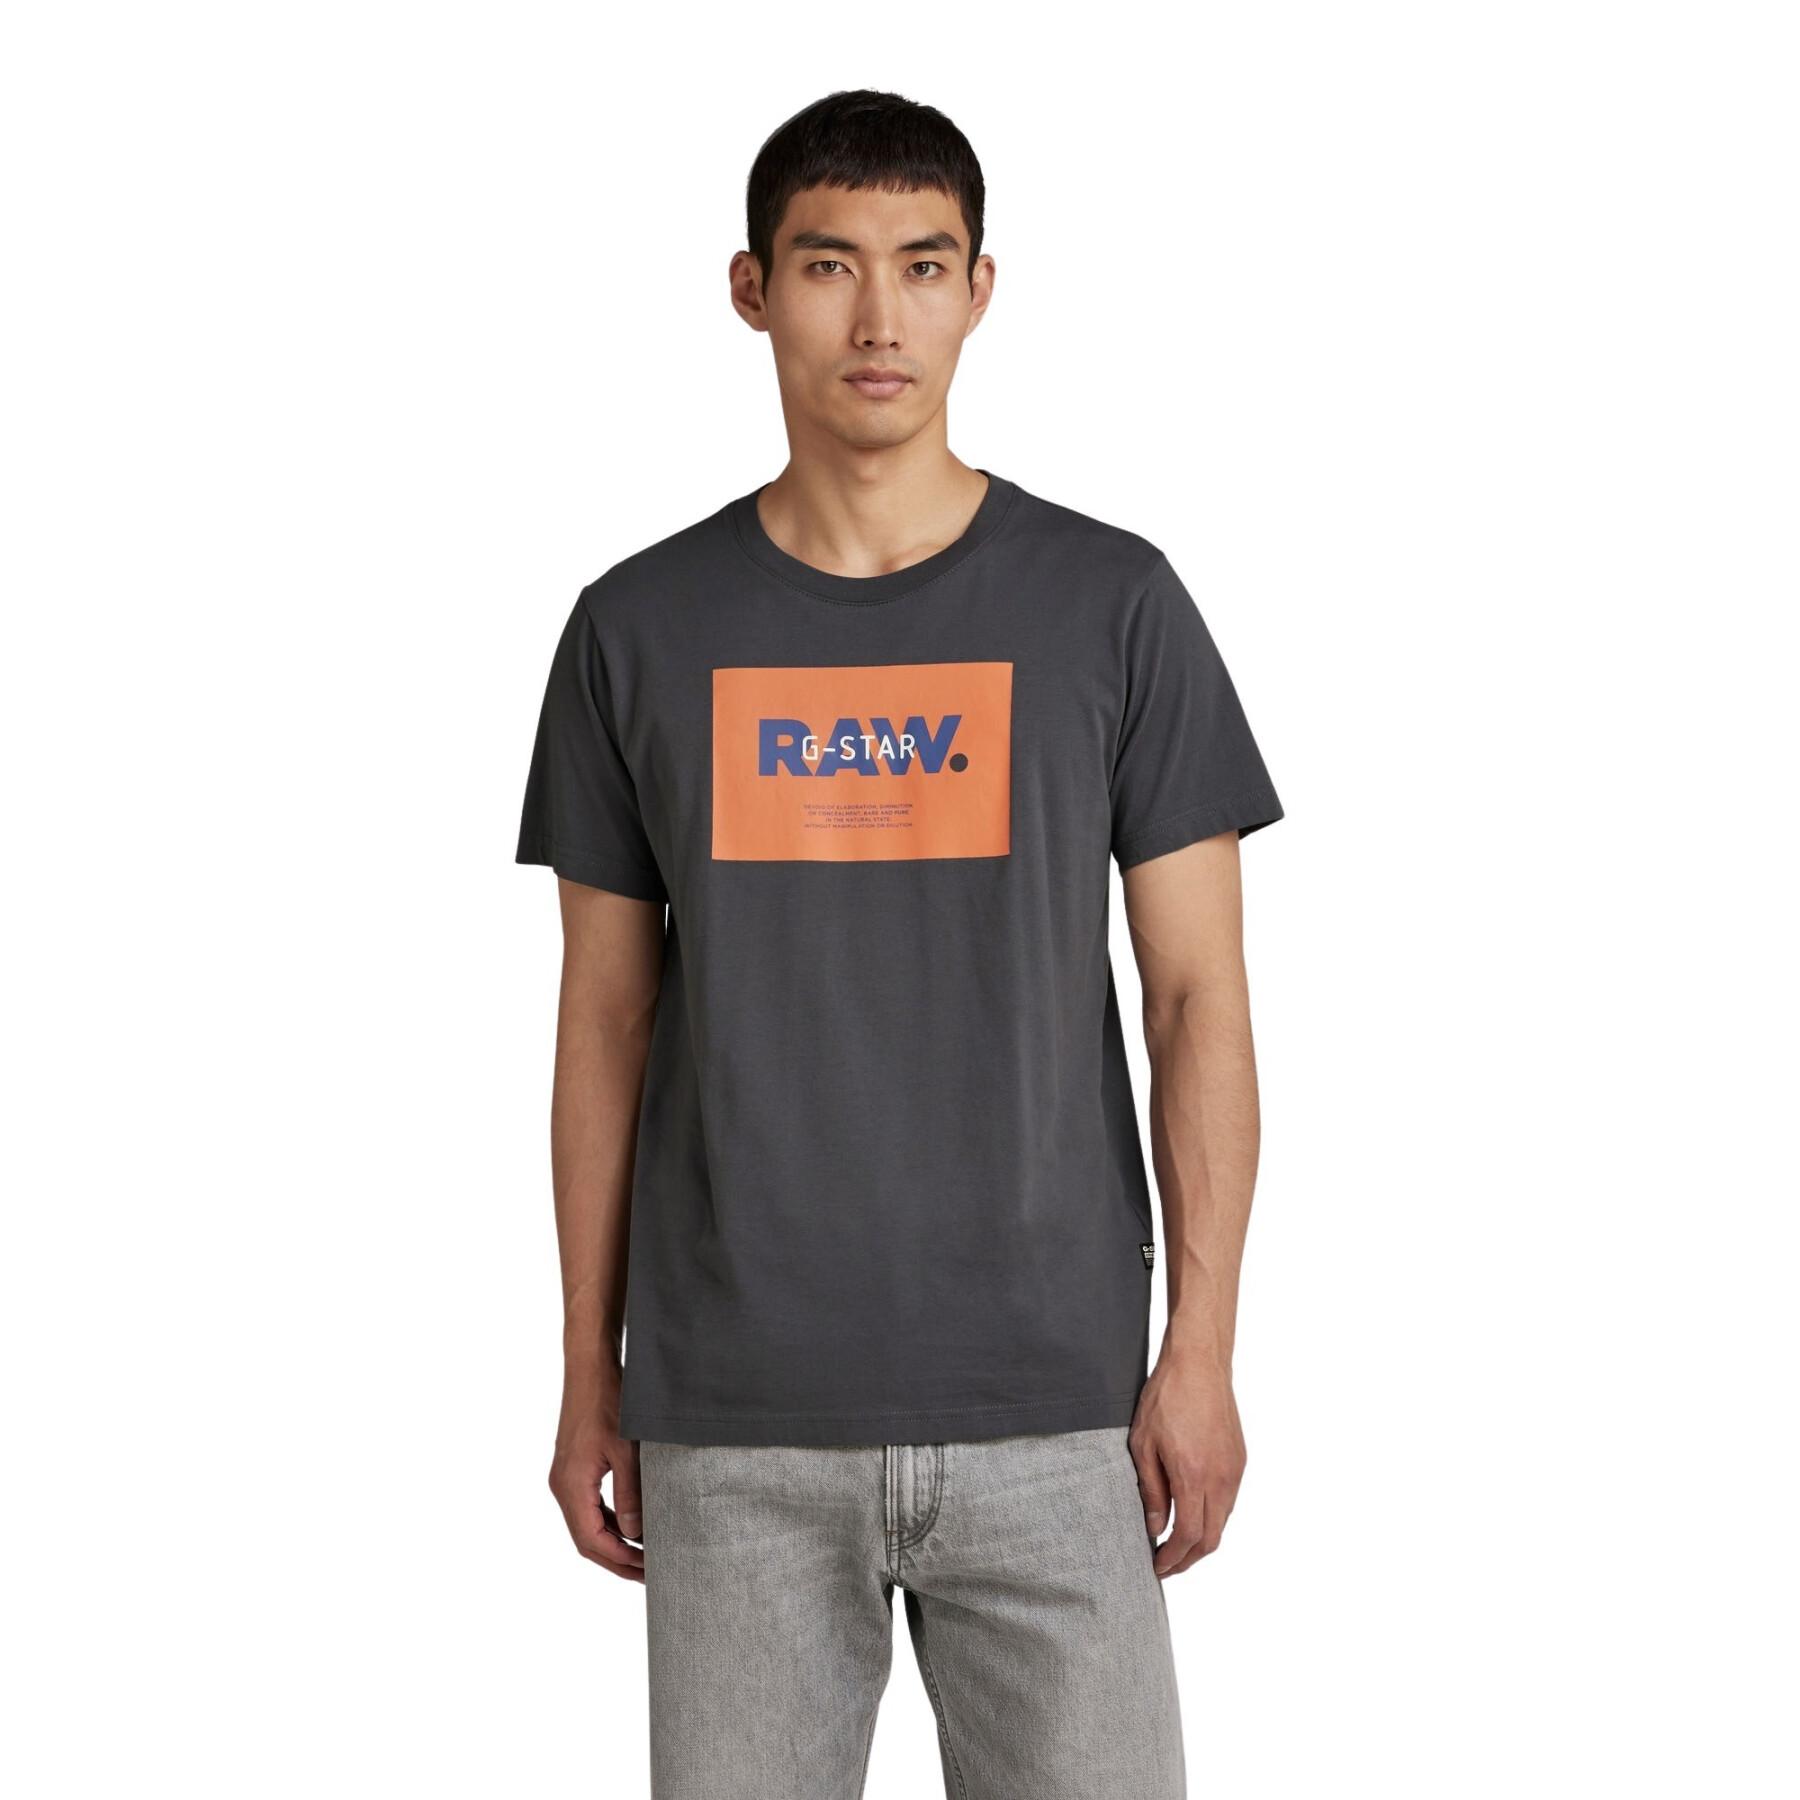 Camiseta G-Star Raw Hd